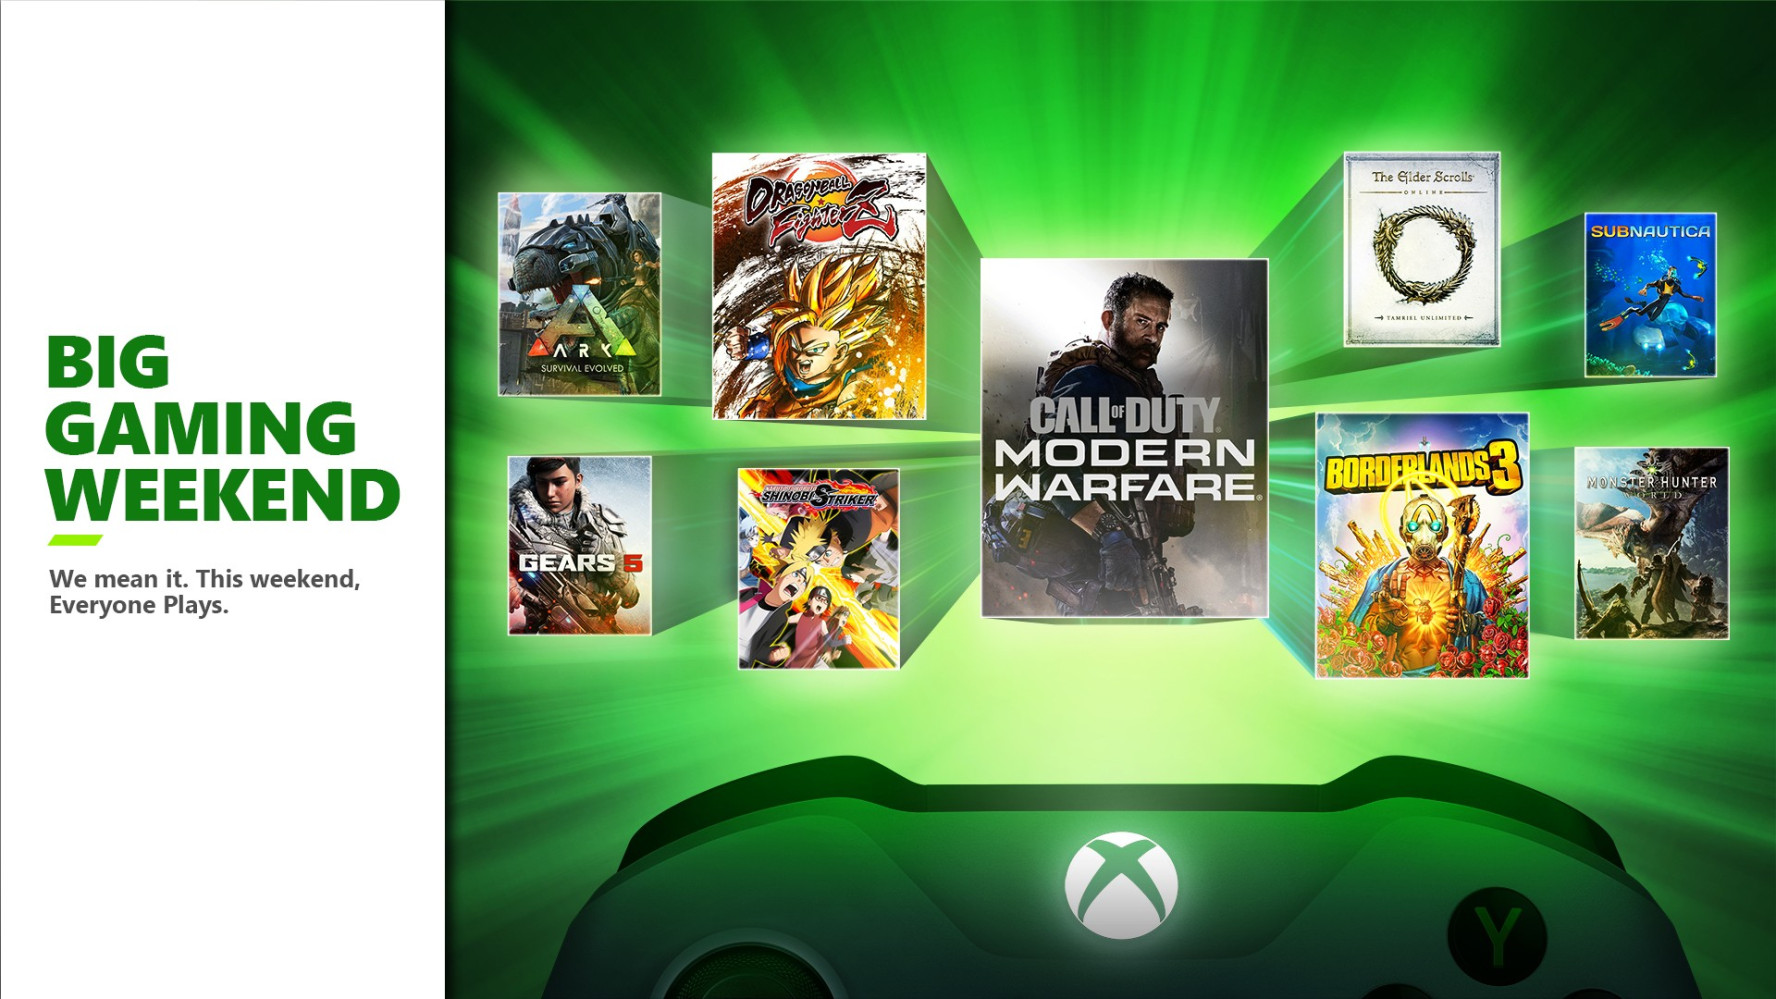 تعلن Xbox عن عطلة نهاية الأسبوع الكبيرة للألعاب مع ألعاب Game Pass المجانية ومتعددة اللاعبين عبر الإنترنت المتاحة للجميع